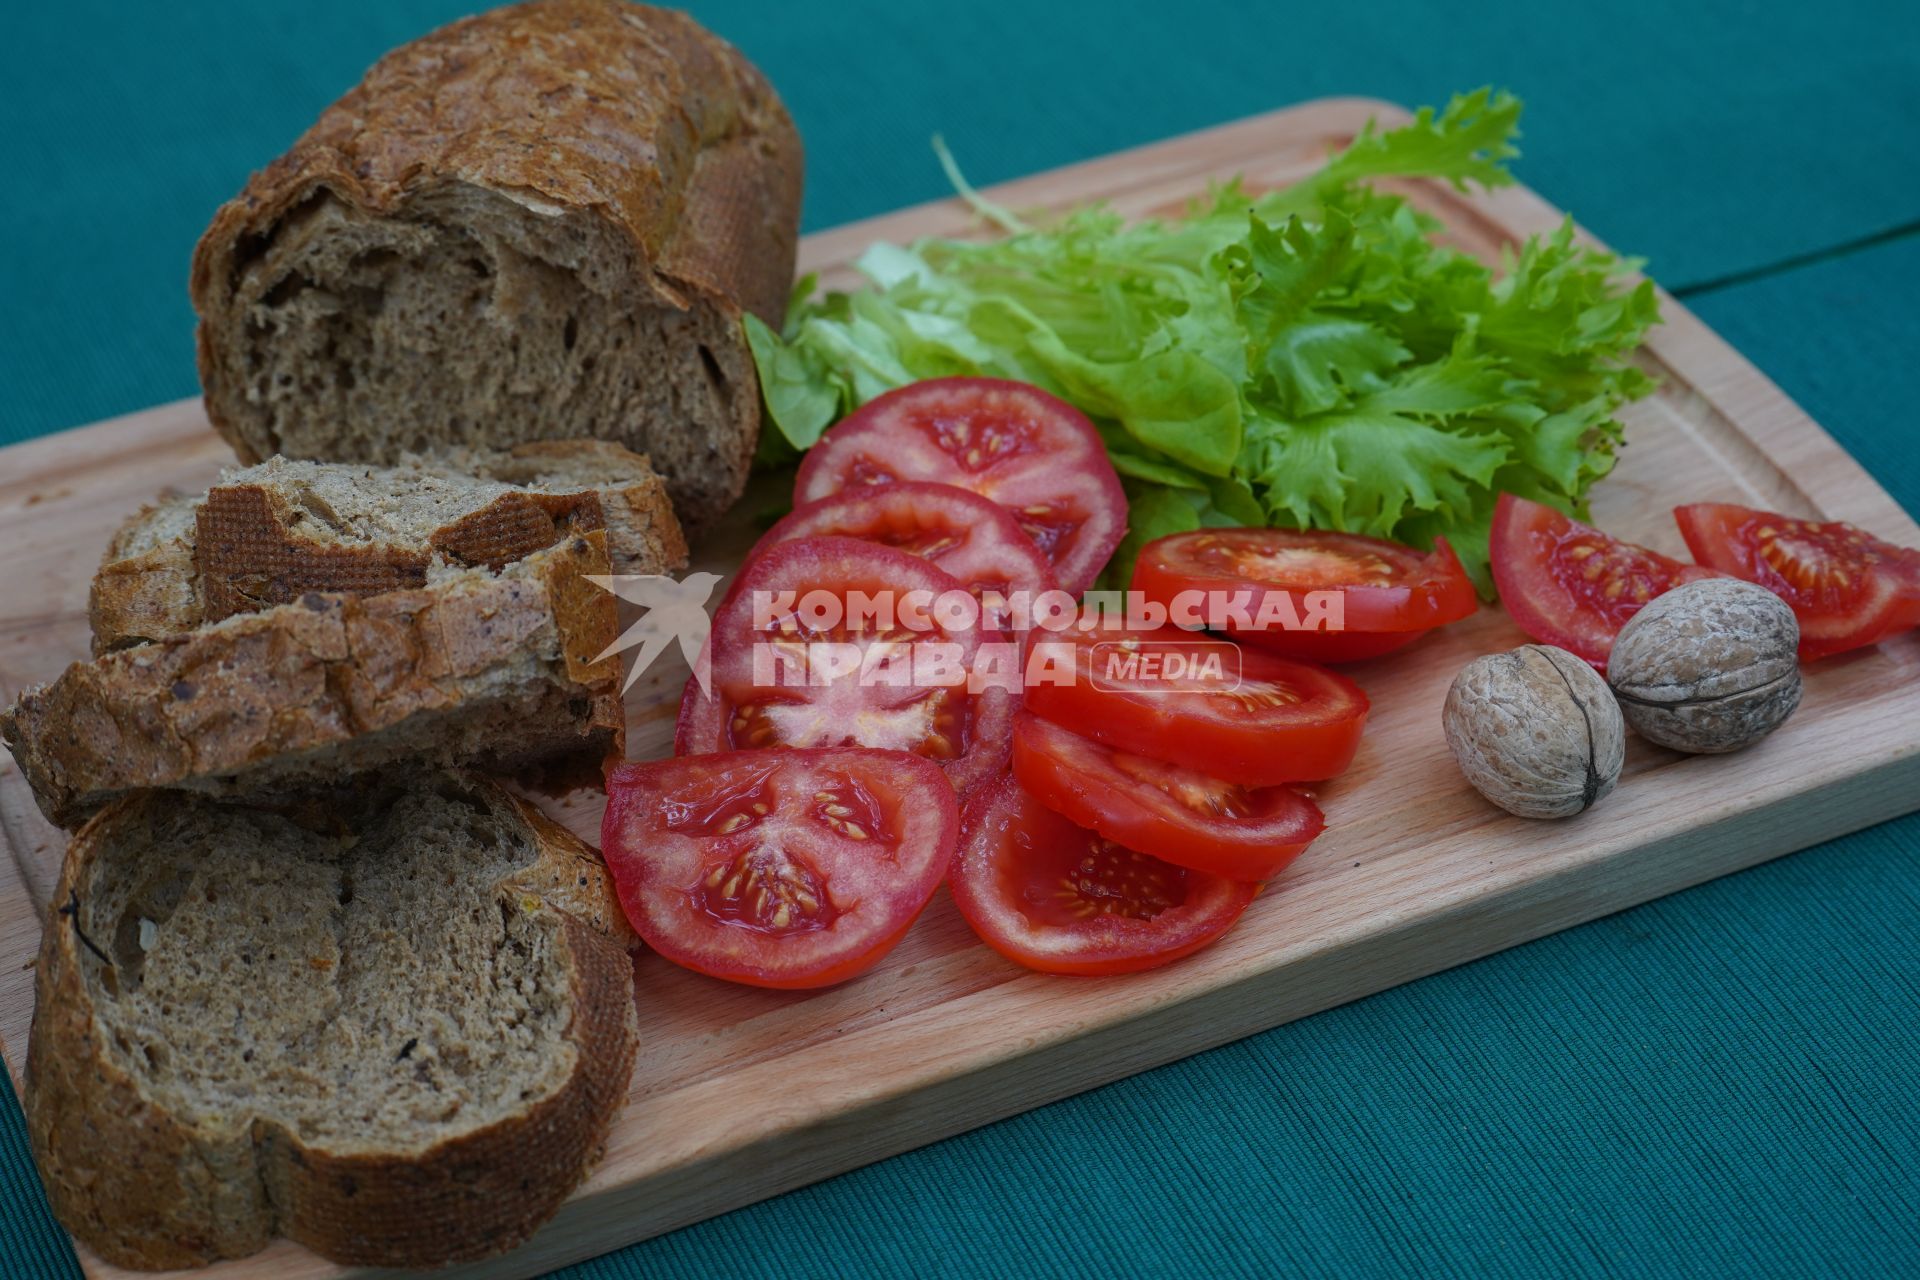 Самара. Батон ржаного хлеба, помидоры, зеленый салат и грецкие орехи на деревянной доске.